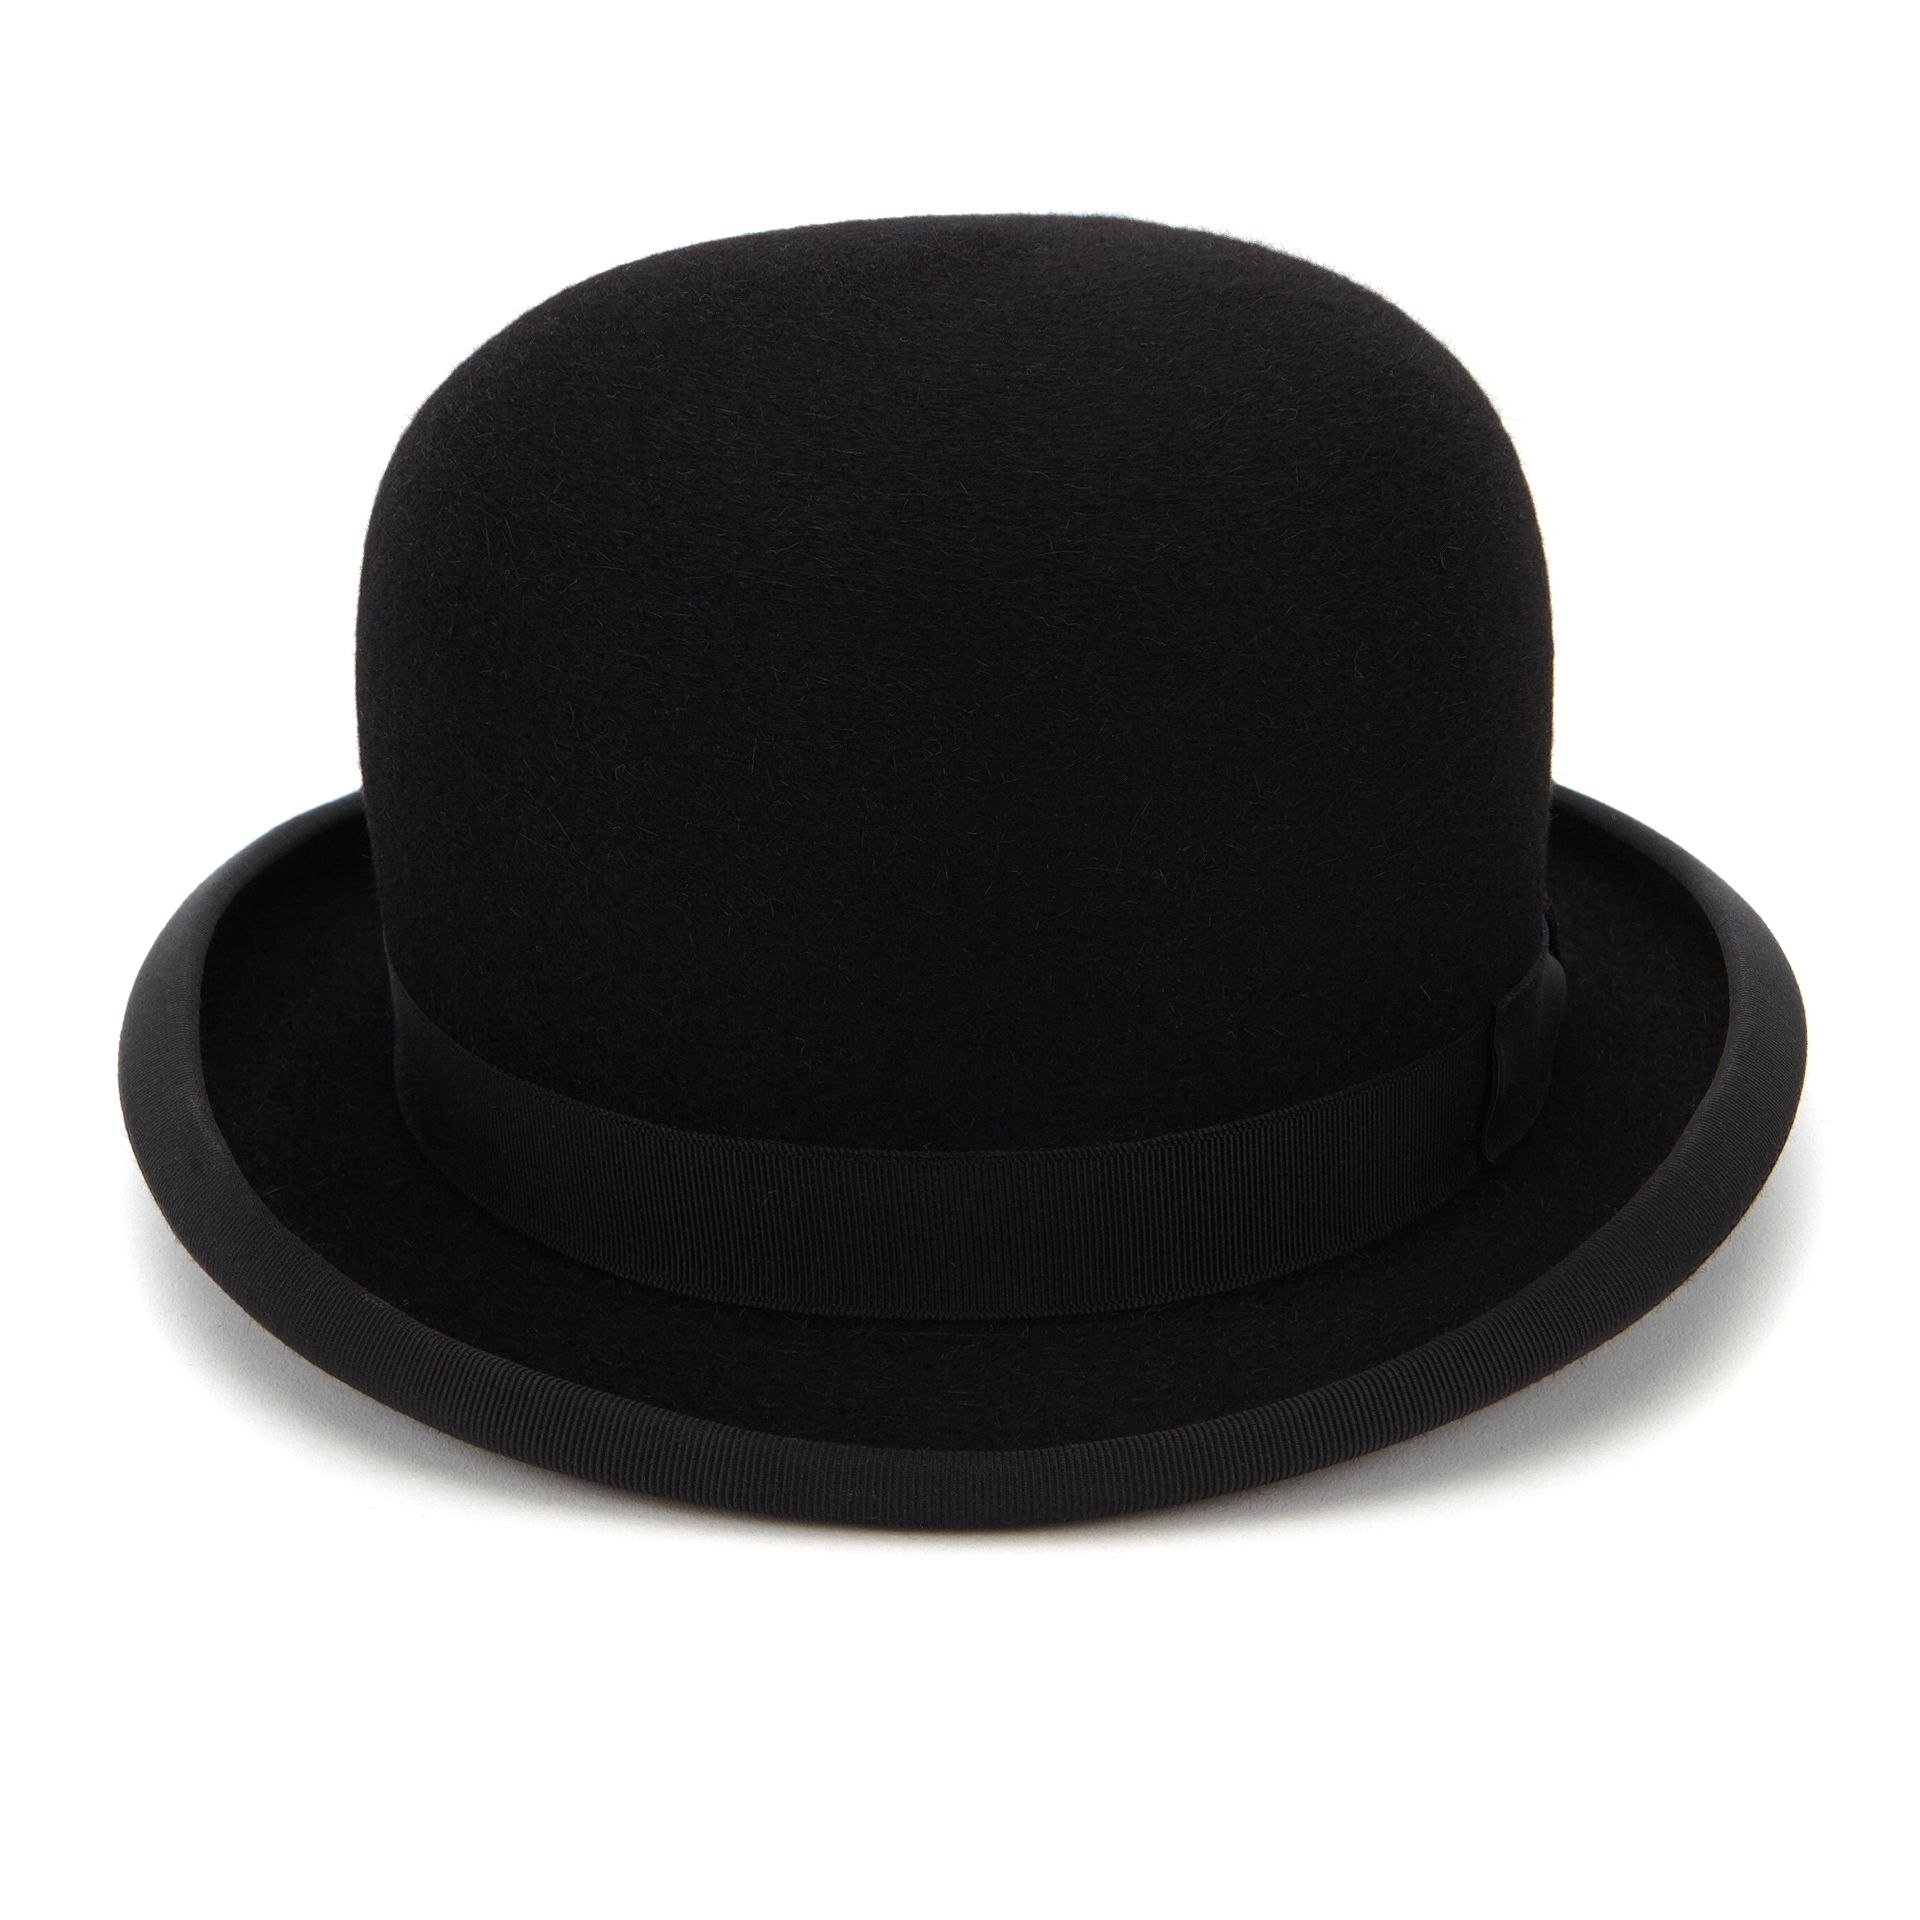 Bowler hat. Котелок шляпа 19 век. Шляпа котелок Британсике. Круглый котелок шляпа. Шляпа "котелок" черная.